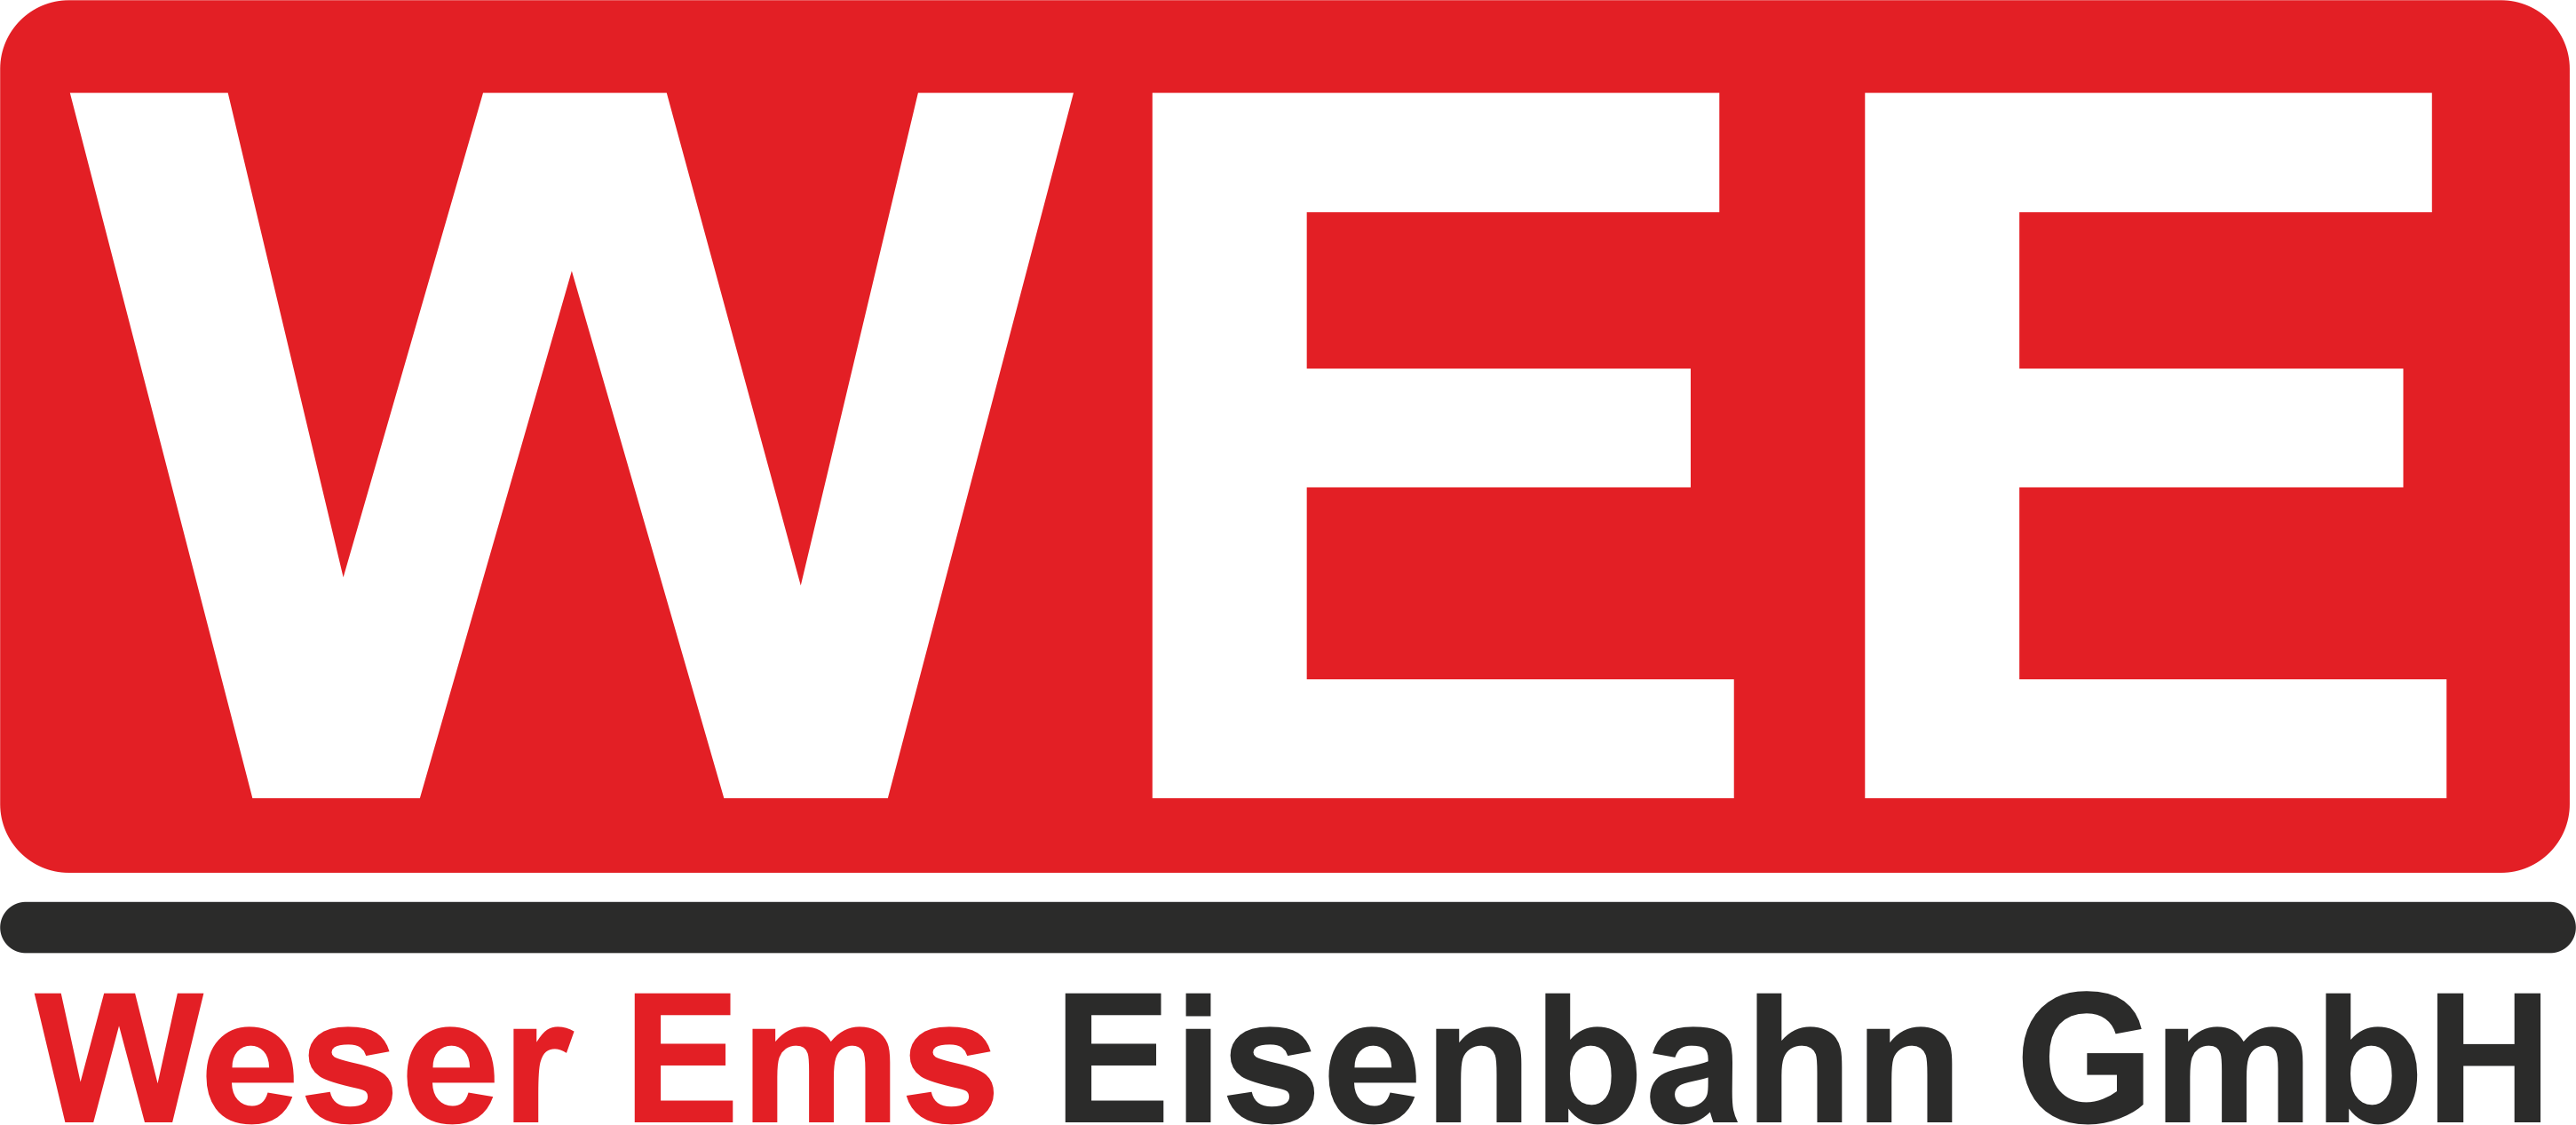 Weser Ems Eisenbahn GmbH